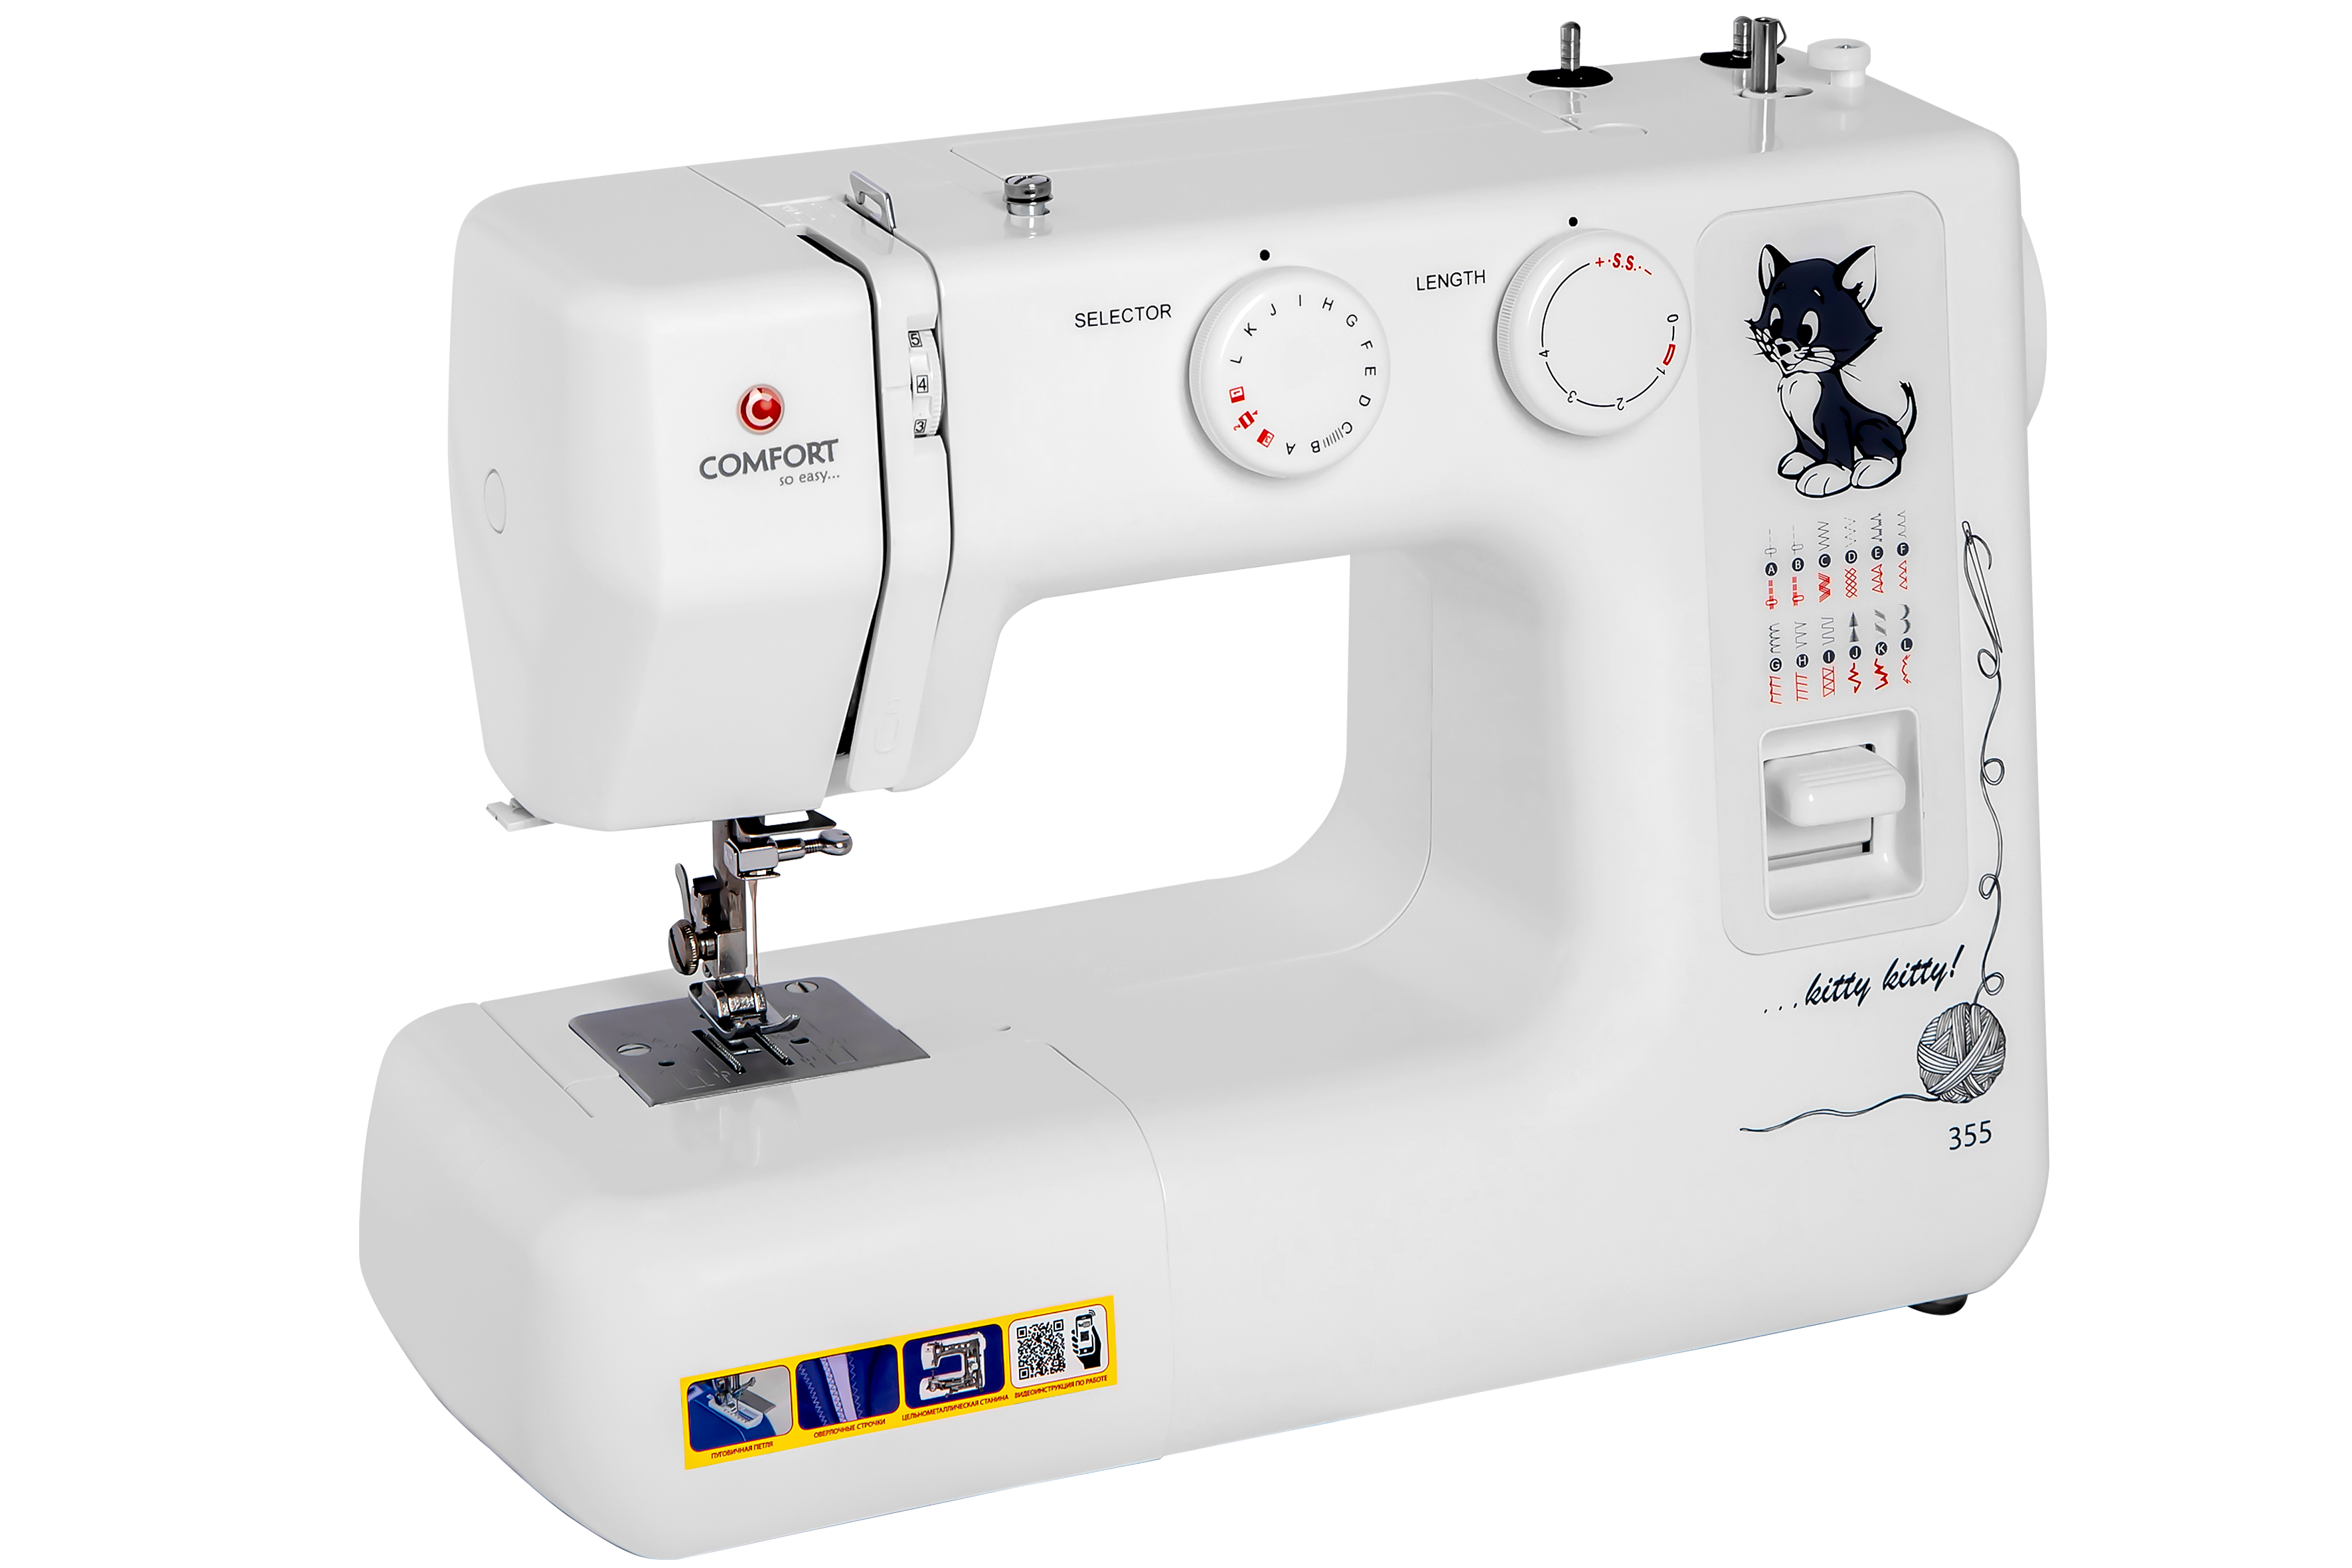 Швейная машина COMFORT 355 белая швейная машина comfort 1040 белая голубая